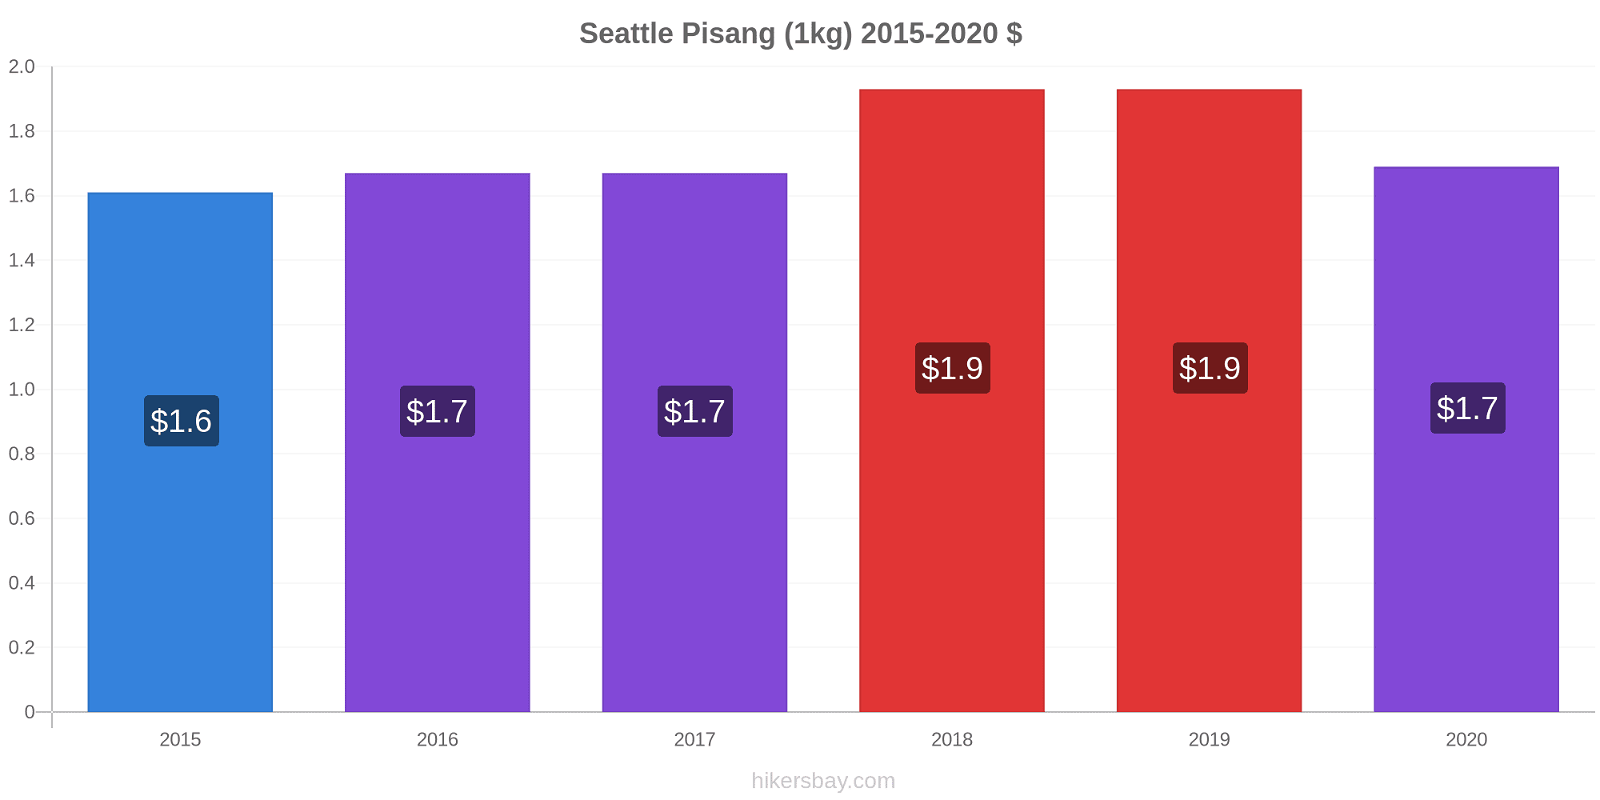 Seattle perubahan harga Pisang (1kg) hikersbay.com